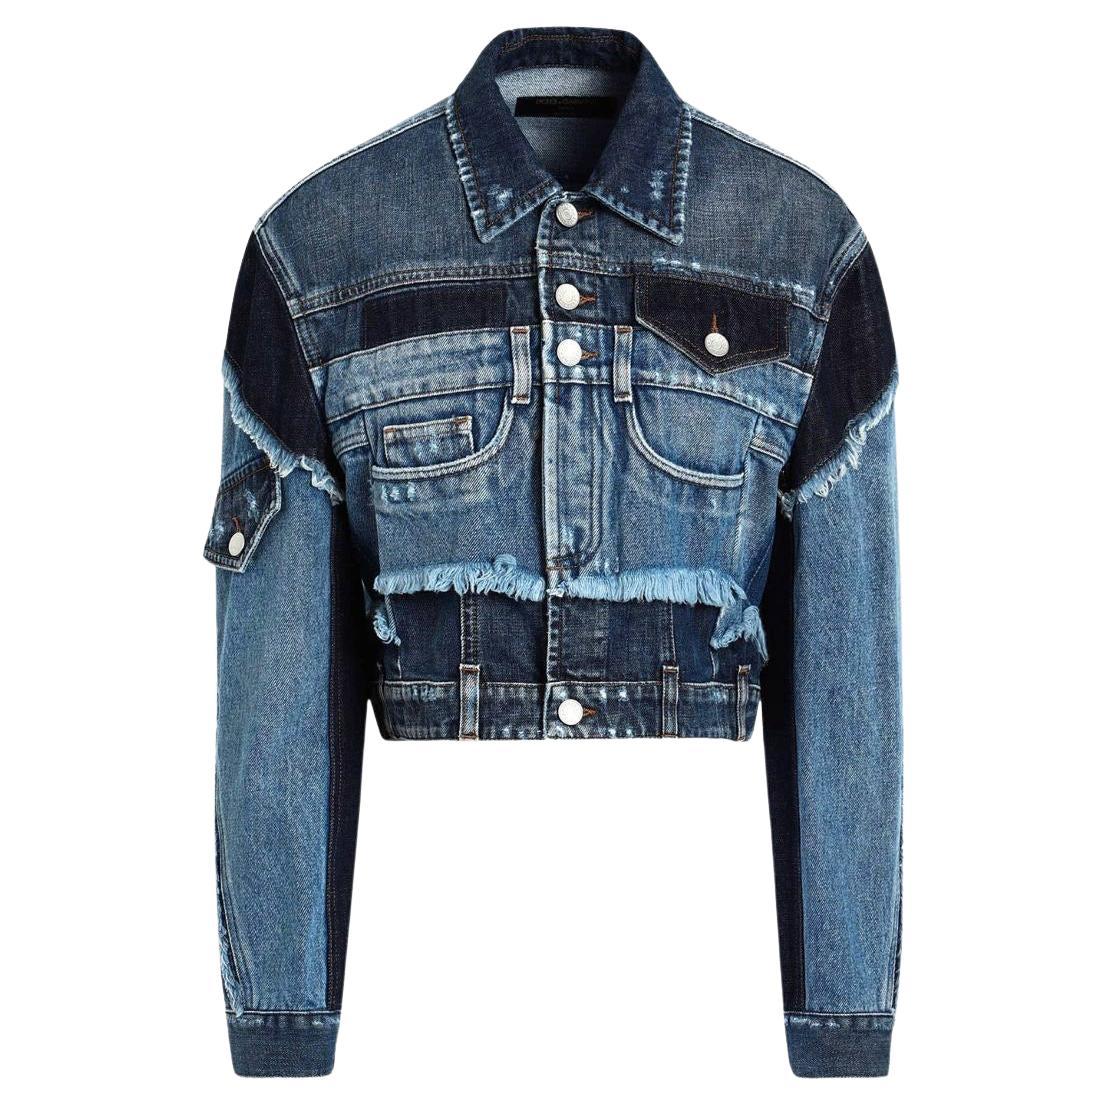 Dolce & Gabbana Blue Cotton Denim Jeans Short Jacket Blazer Blouson DG For Sale